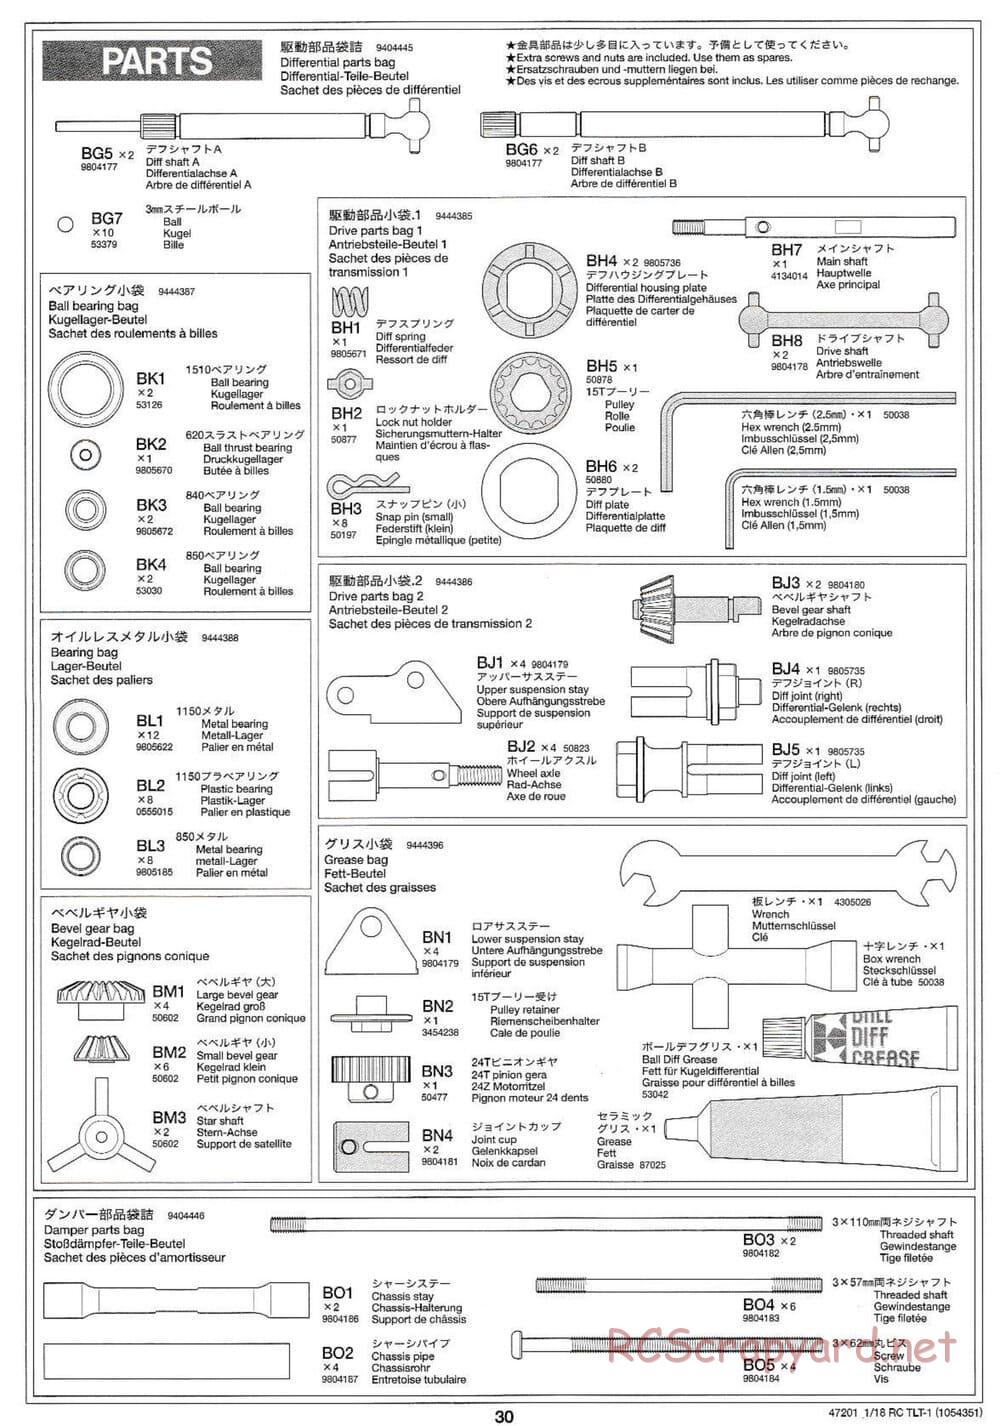 Tamiya - Rock Buster - TLT-1 Chassis - Manual - Page 30